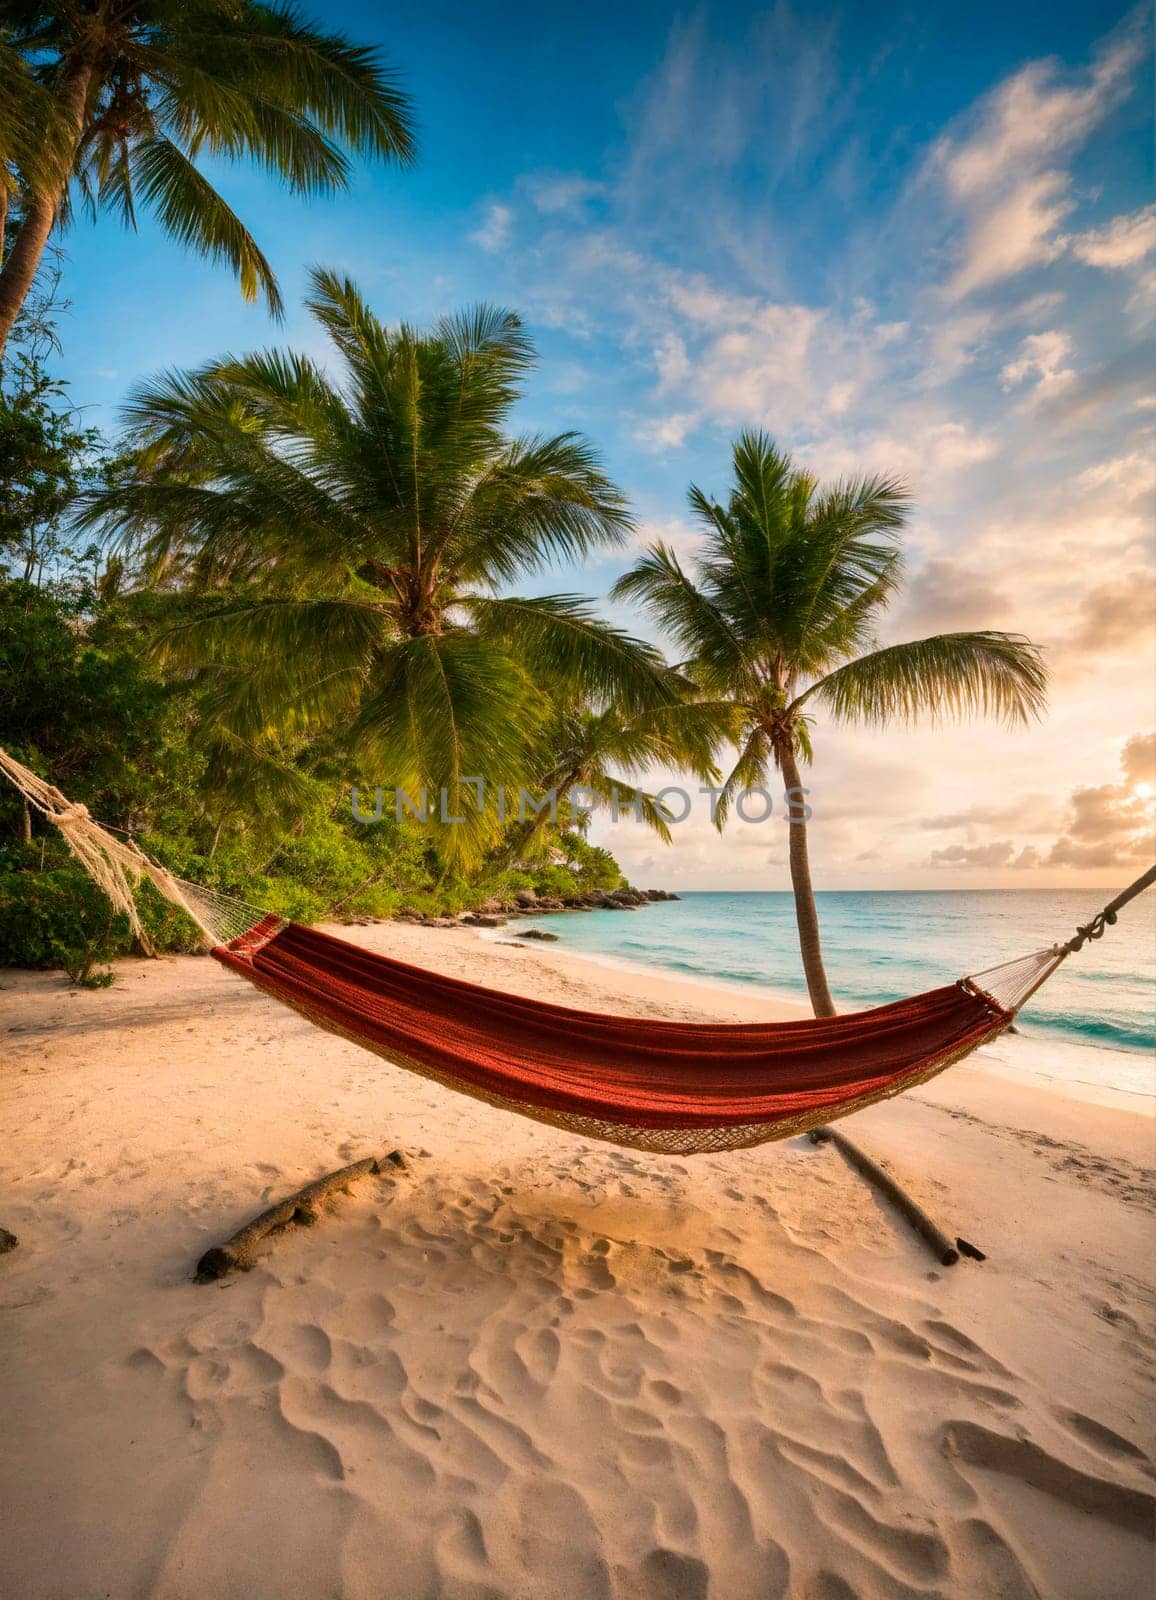 hammock on a tropical beach. Selective focus. by yanadjana